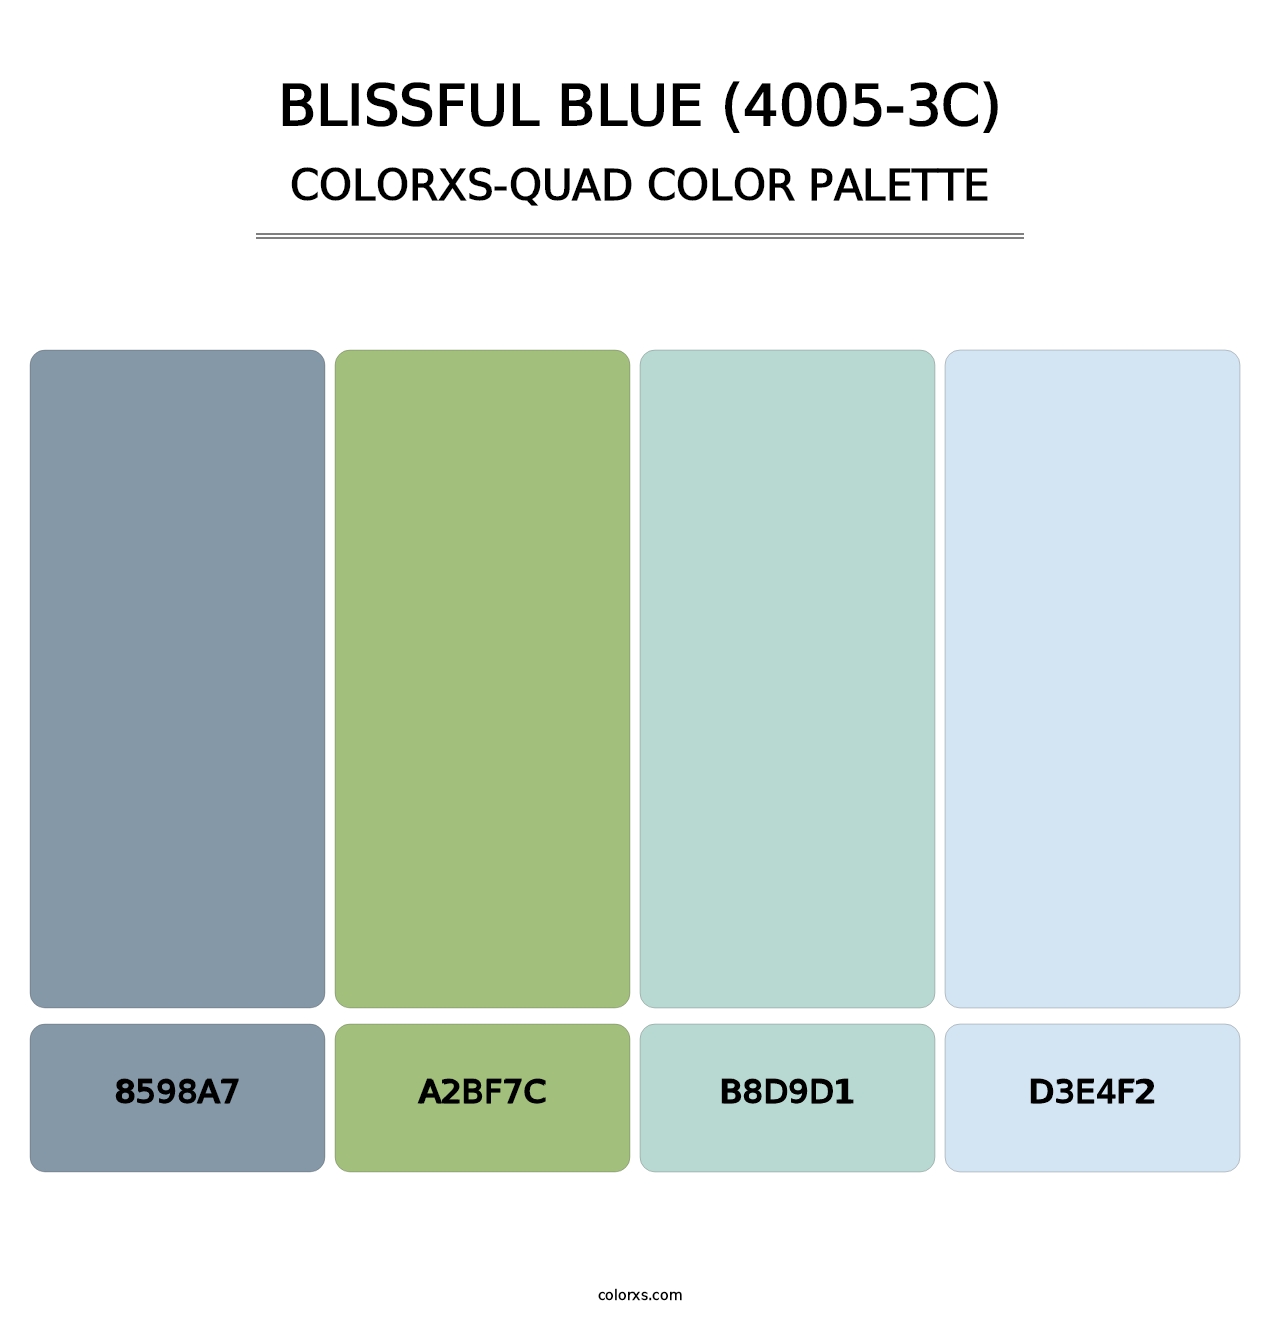 Blissful Blue (4005-3C) - Colorxs Quad Palette